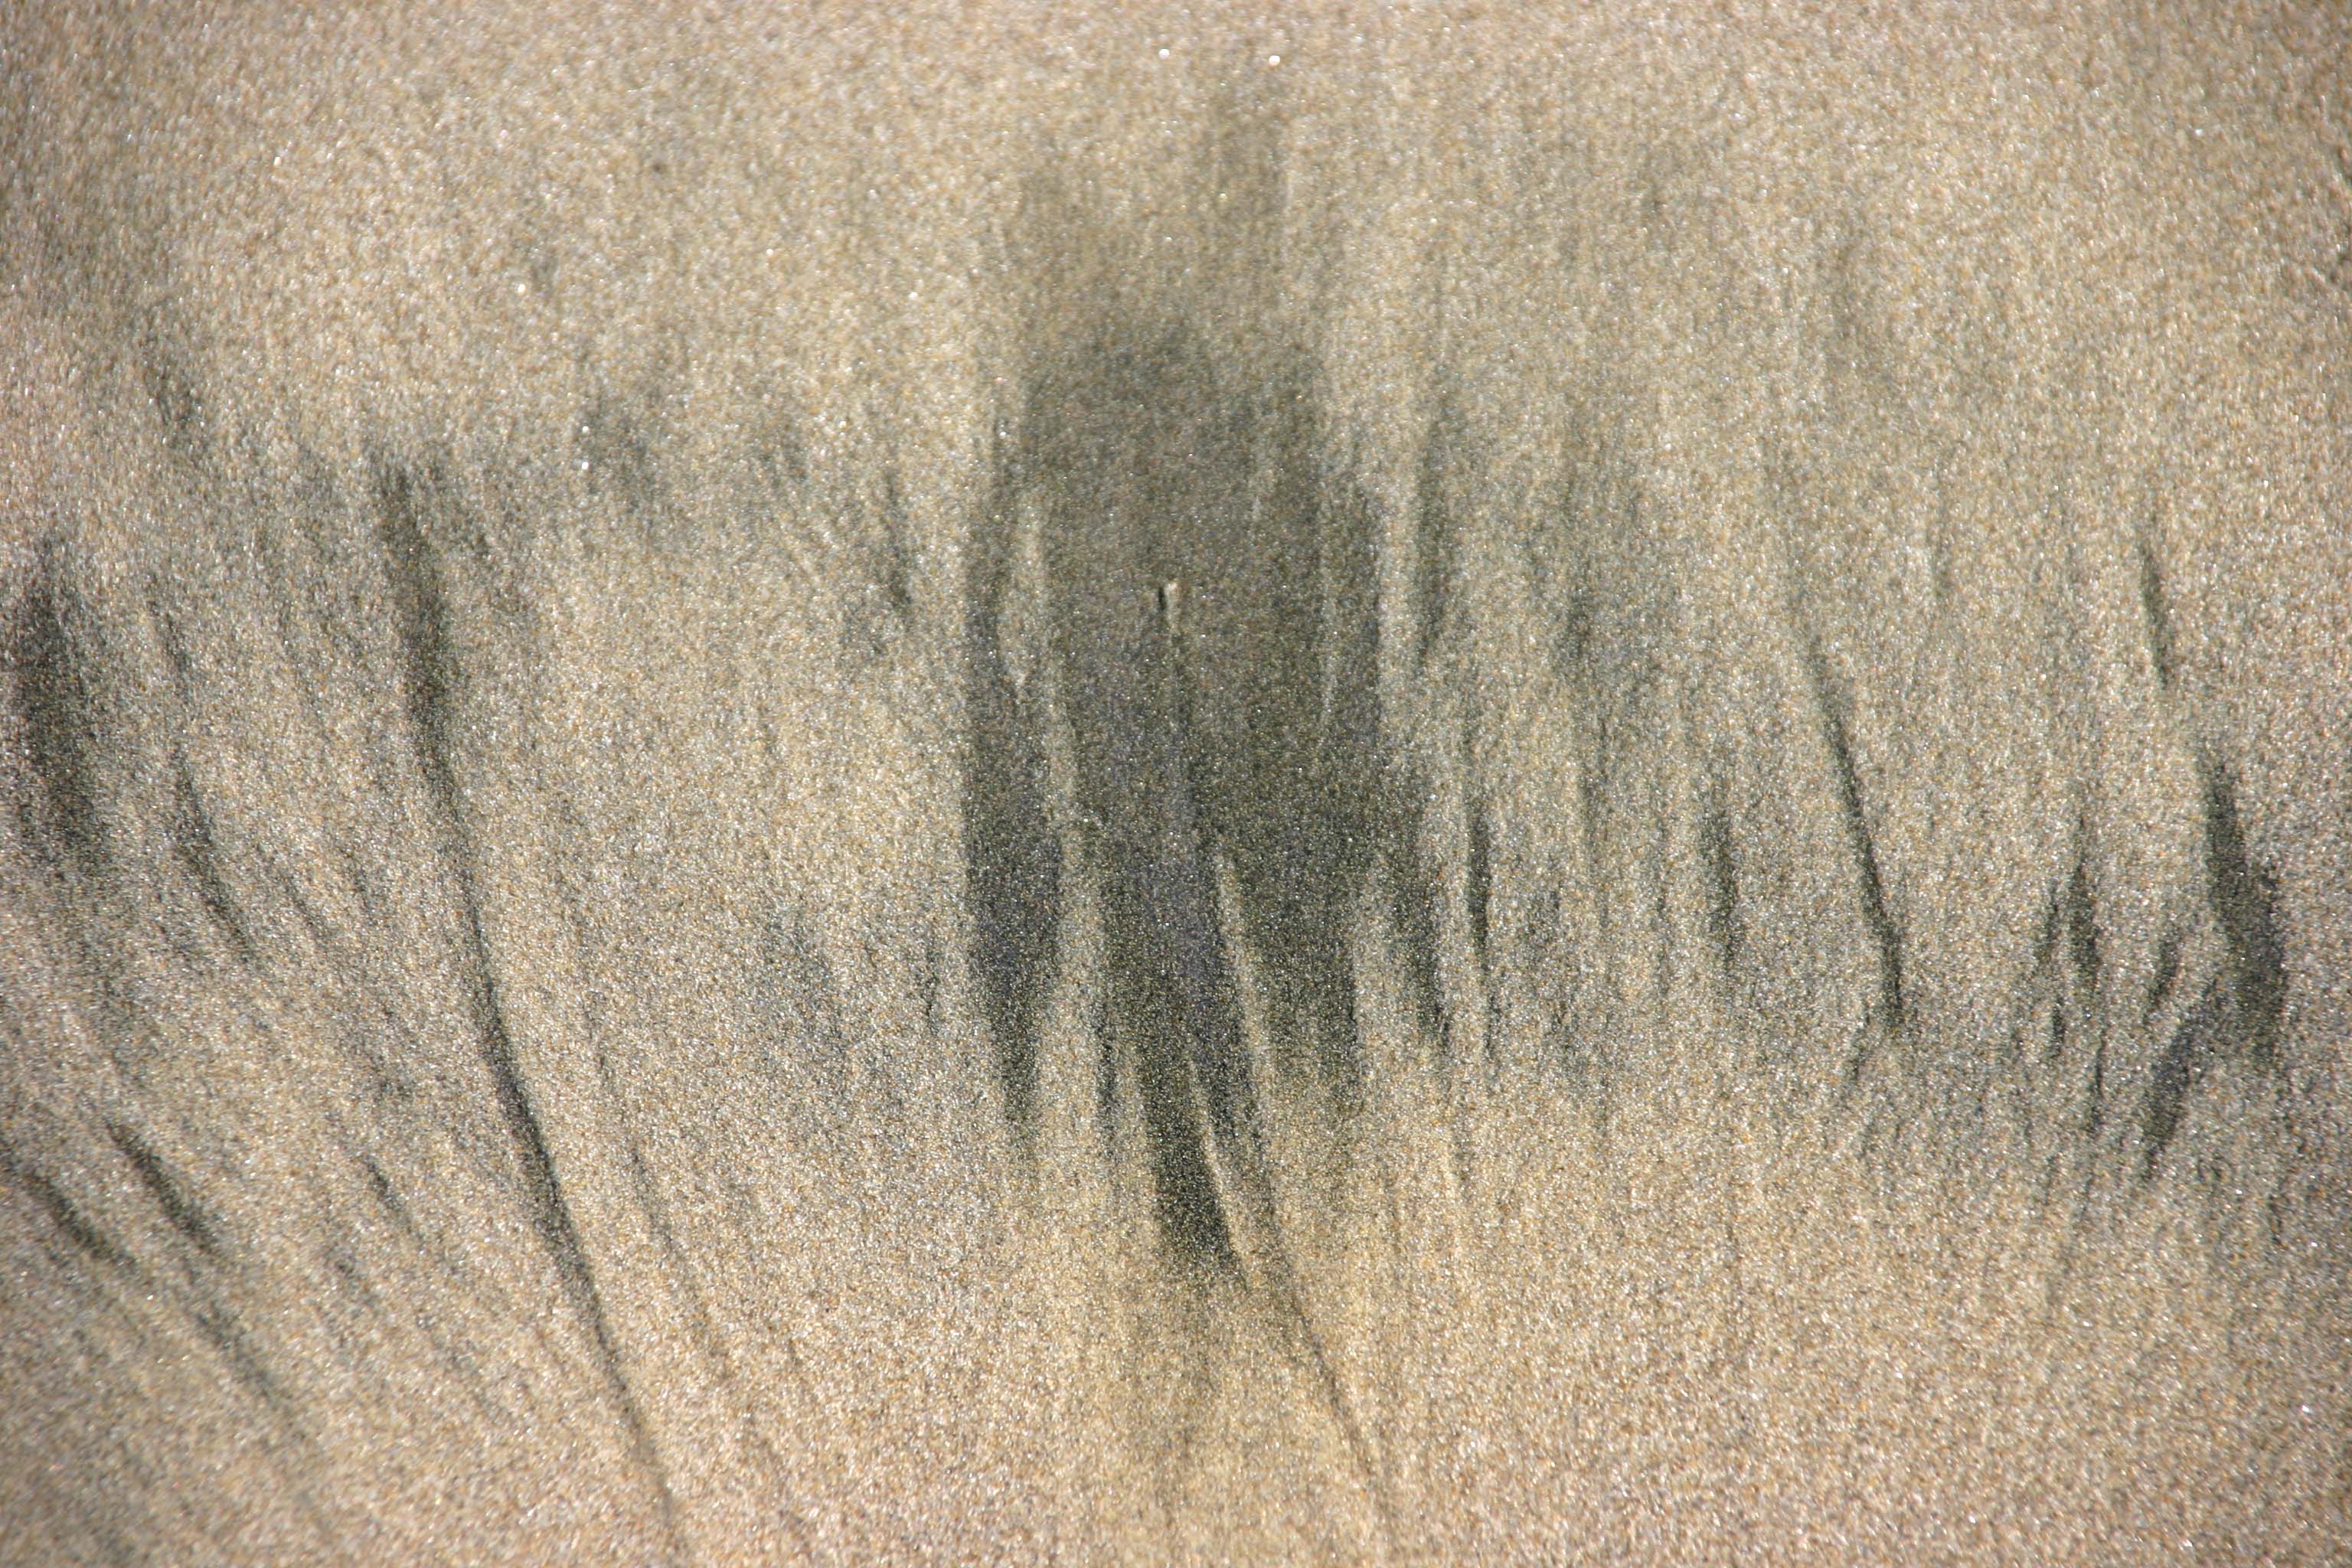 Brushstrokes in the Sand